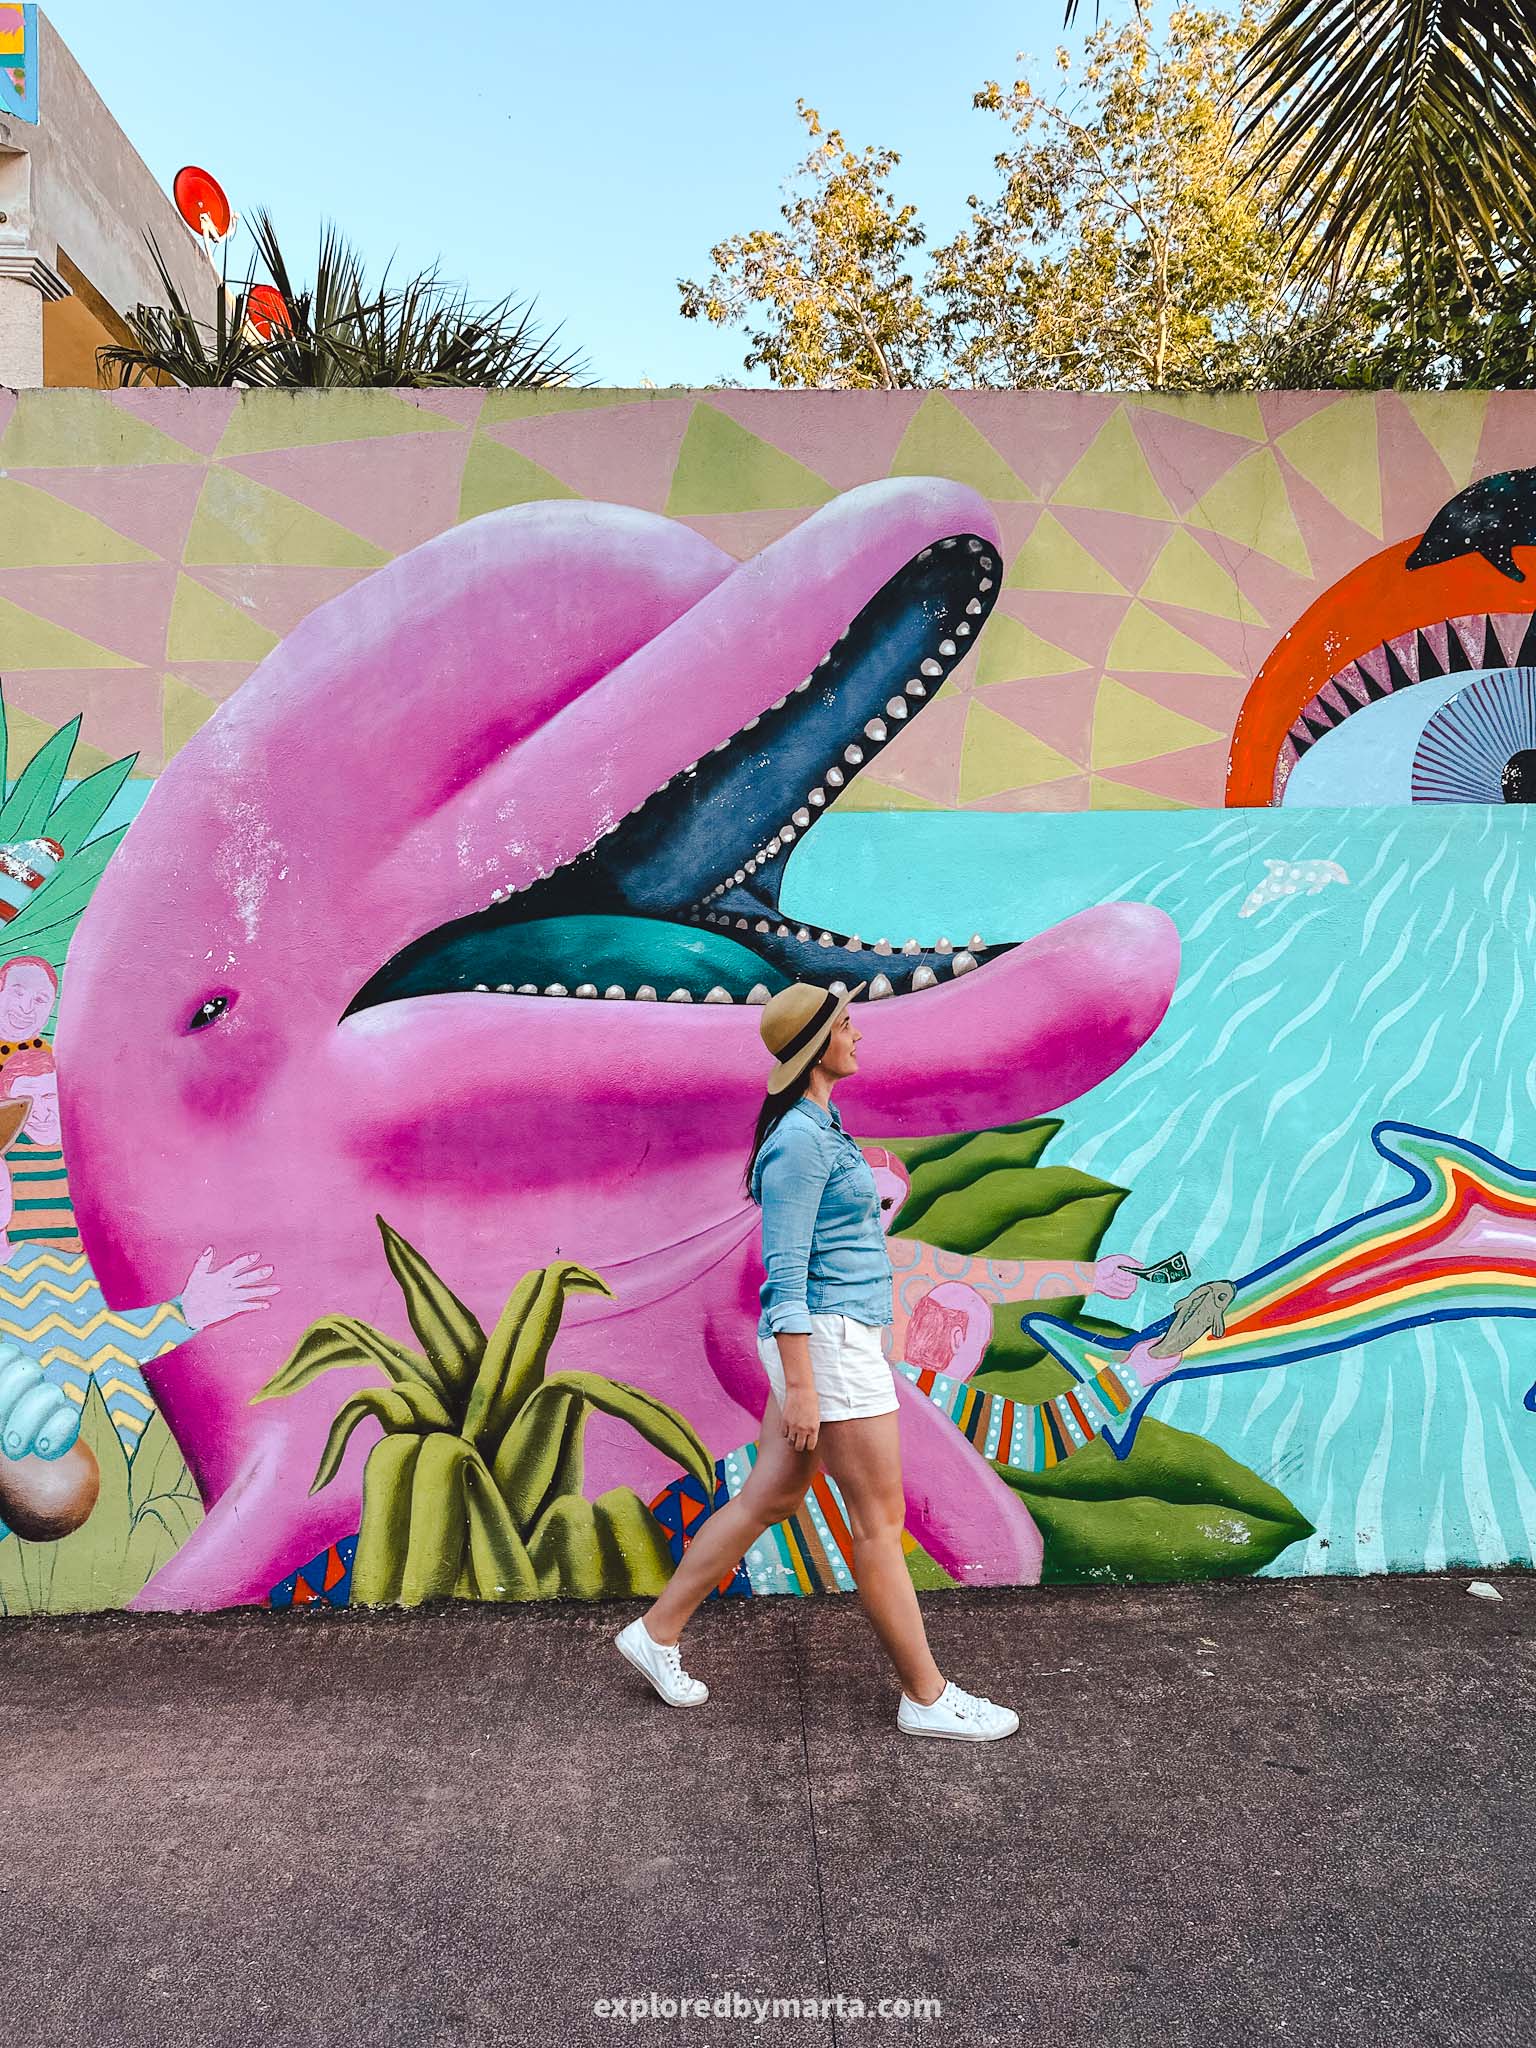 Cozumel, Mexico - best Instagram spots in Cozumel - street art murals